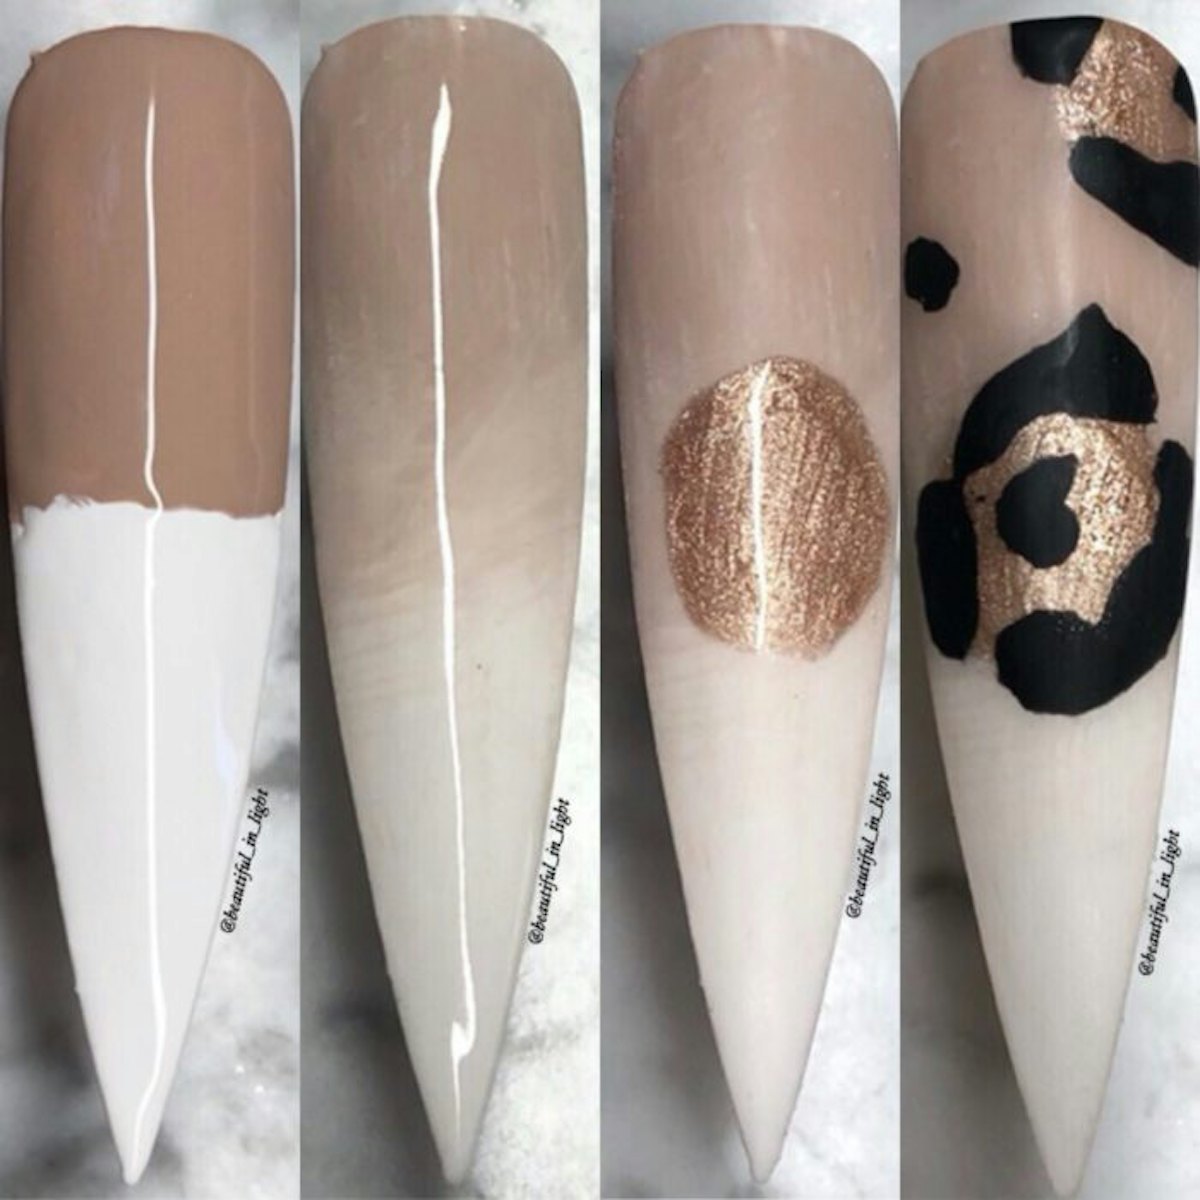 acrylic nail designs with cheetah